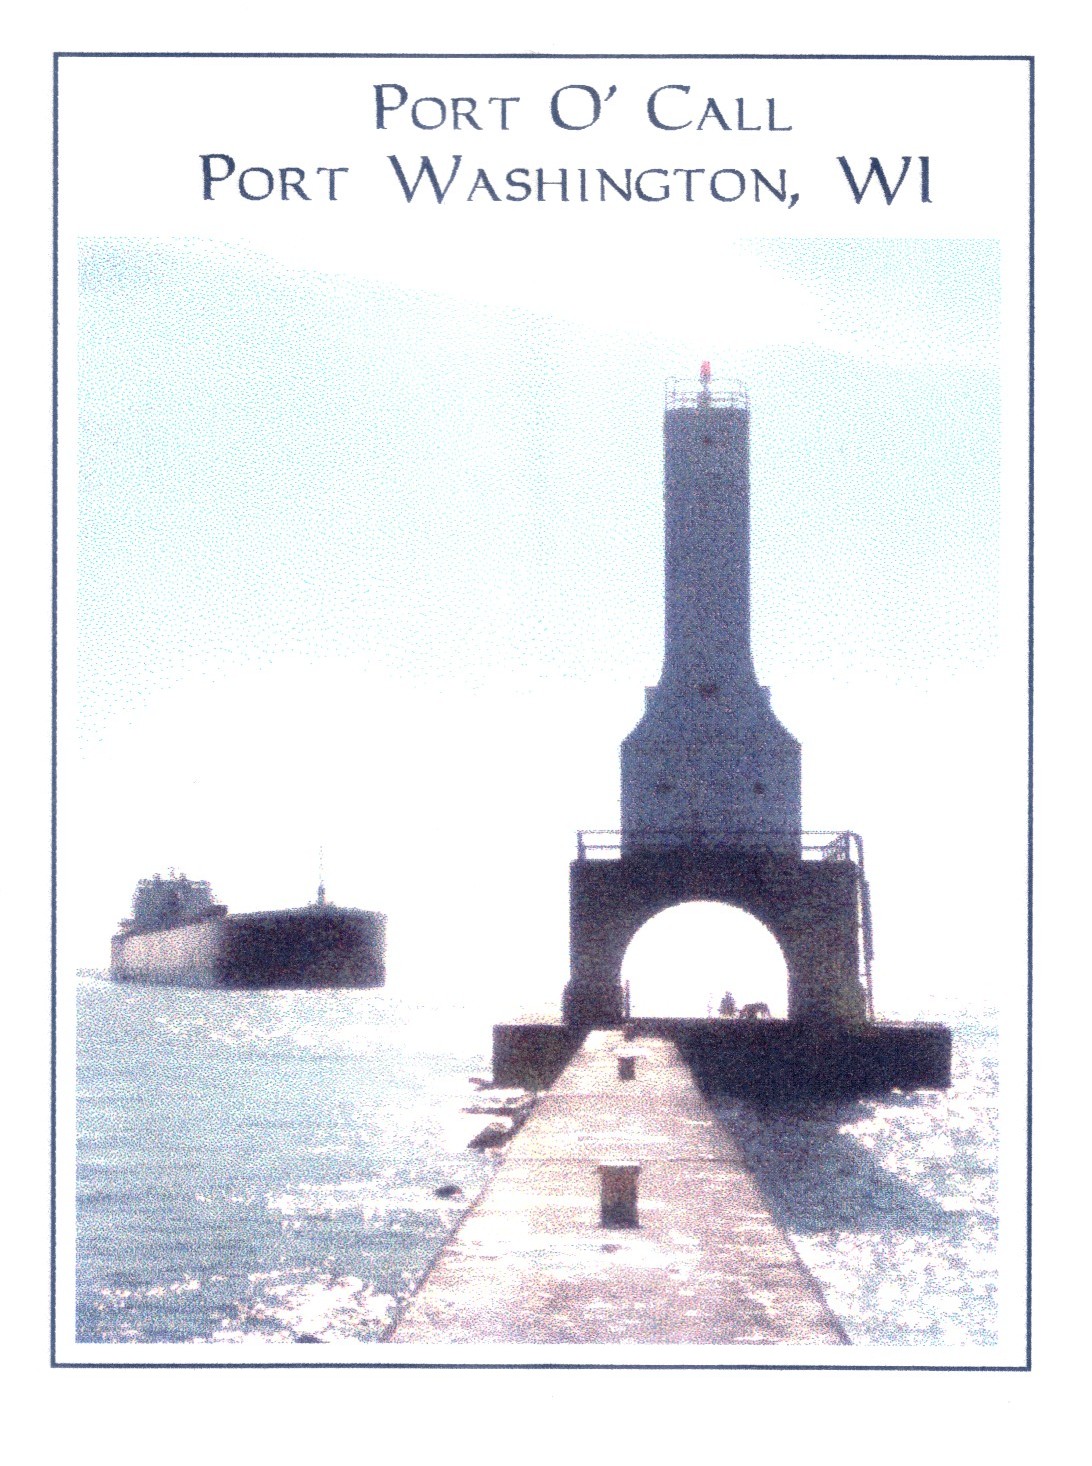 The lighthouse of Port Washington: Port O' Call.  --  Fyrtrnet - et kjent landemerke i Port Washington: Port O' Call.